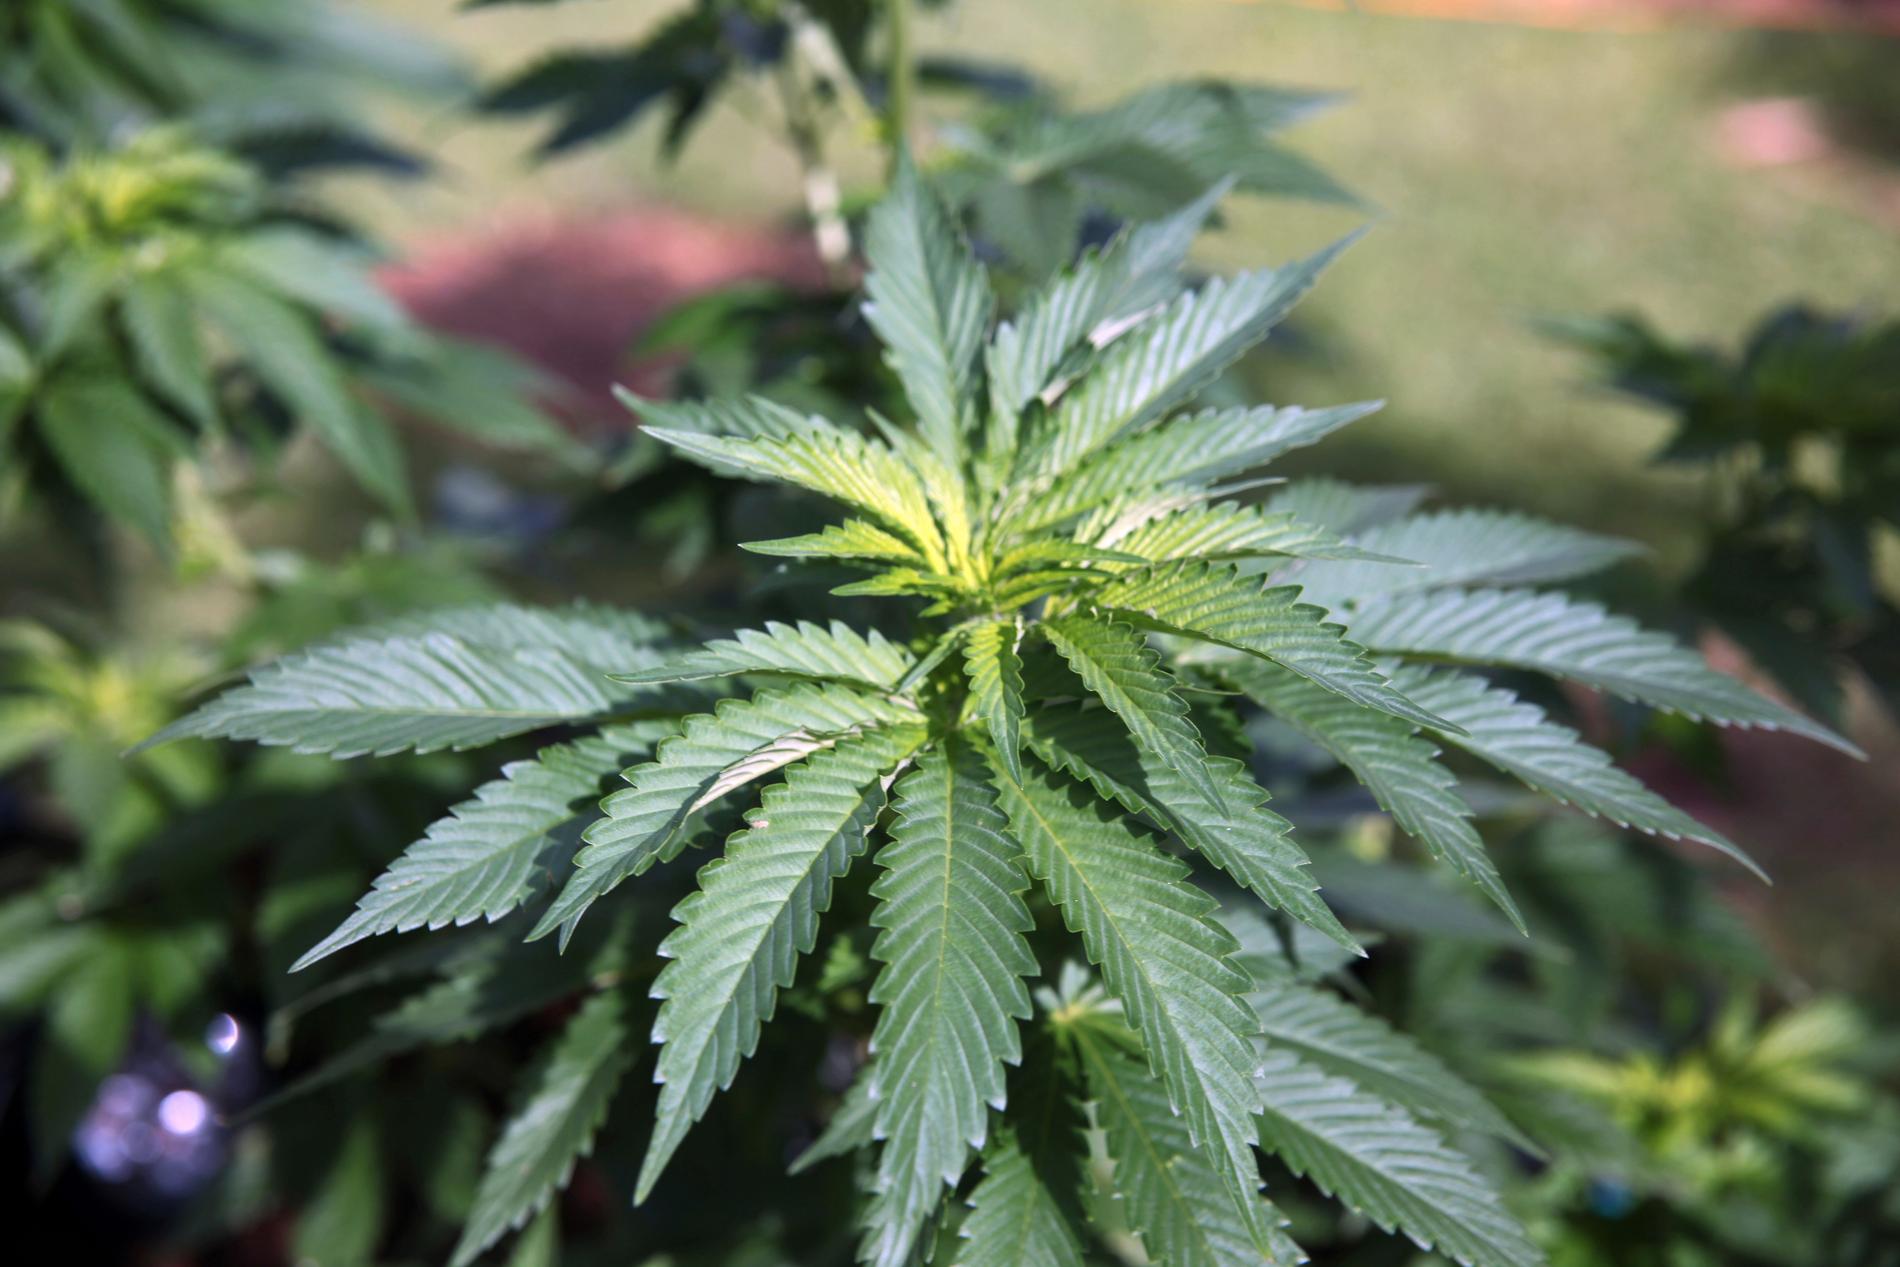 Bediol innehåller hela växtdelar från cannabisplantorna och har inte extraherats eller fåtts att efterlikna enskilda cannabissubstanser.